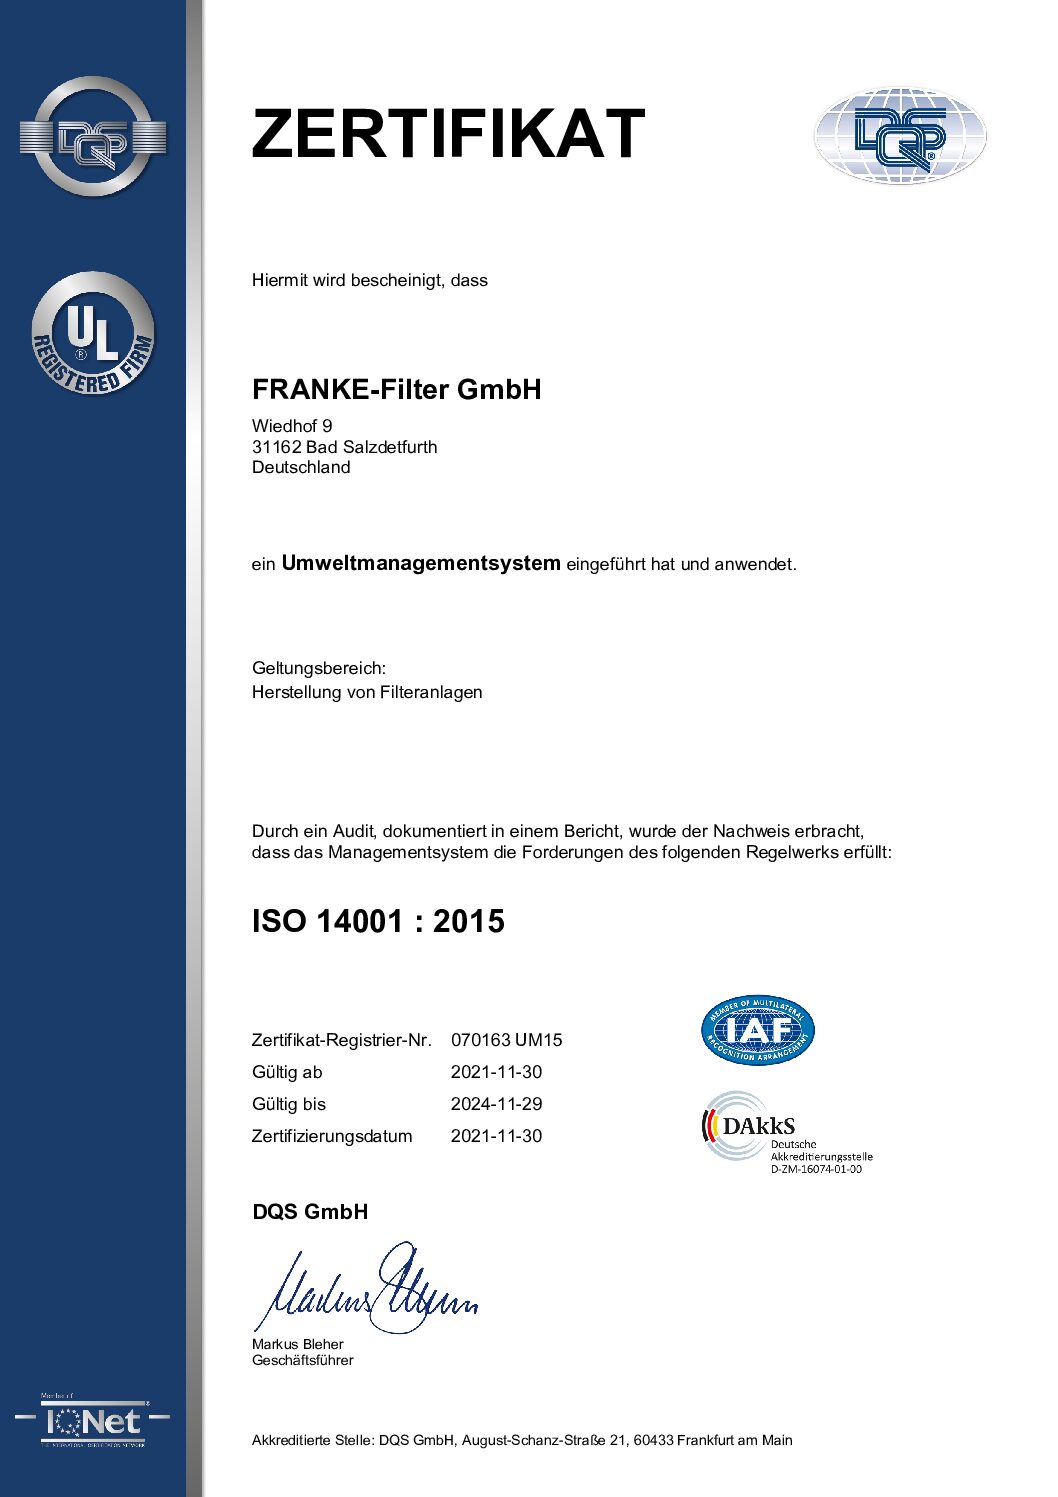 FRANKE-Filter zertifiziert nach ISO14001 (Umweltmanagement)